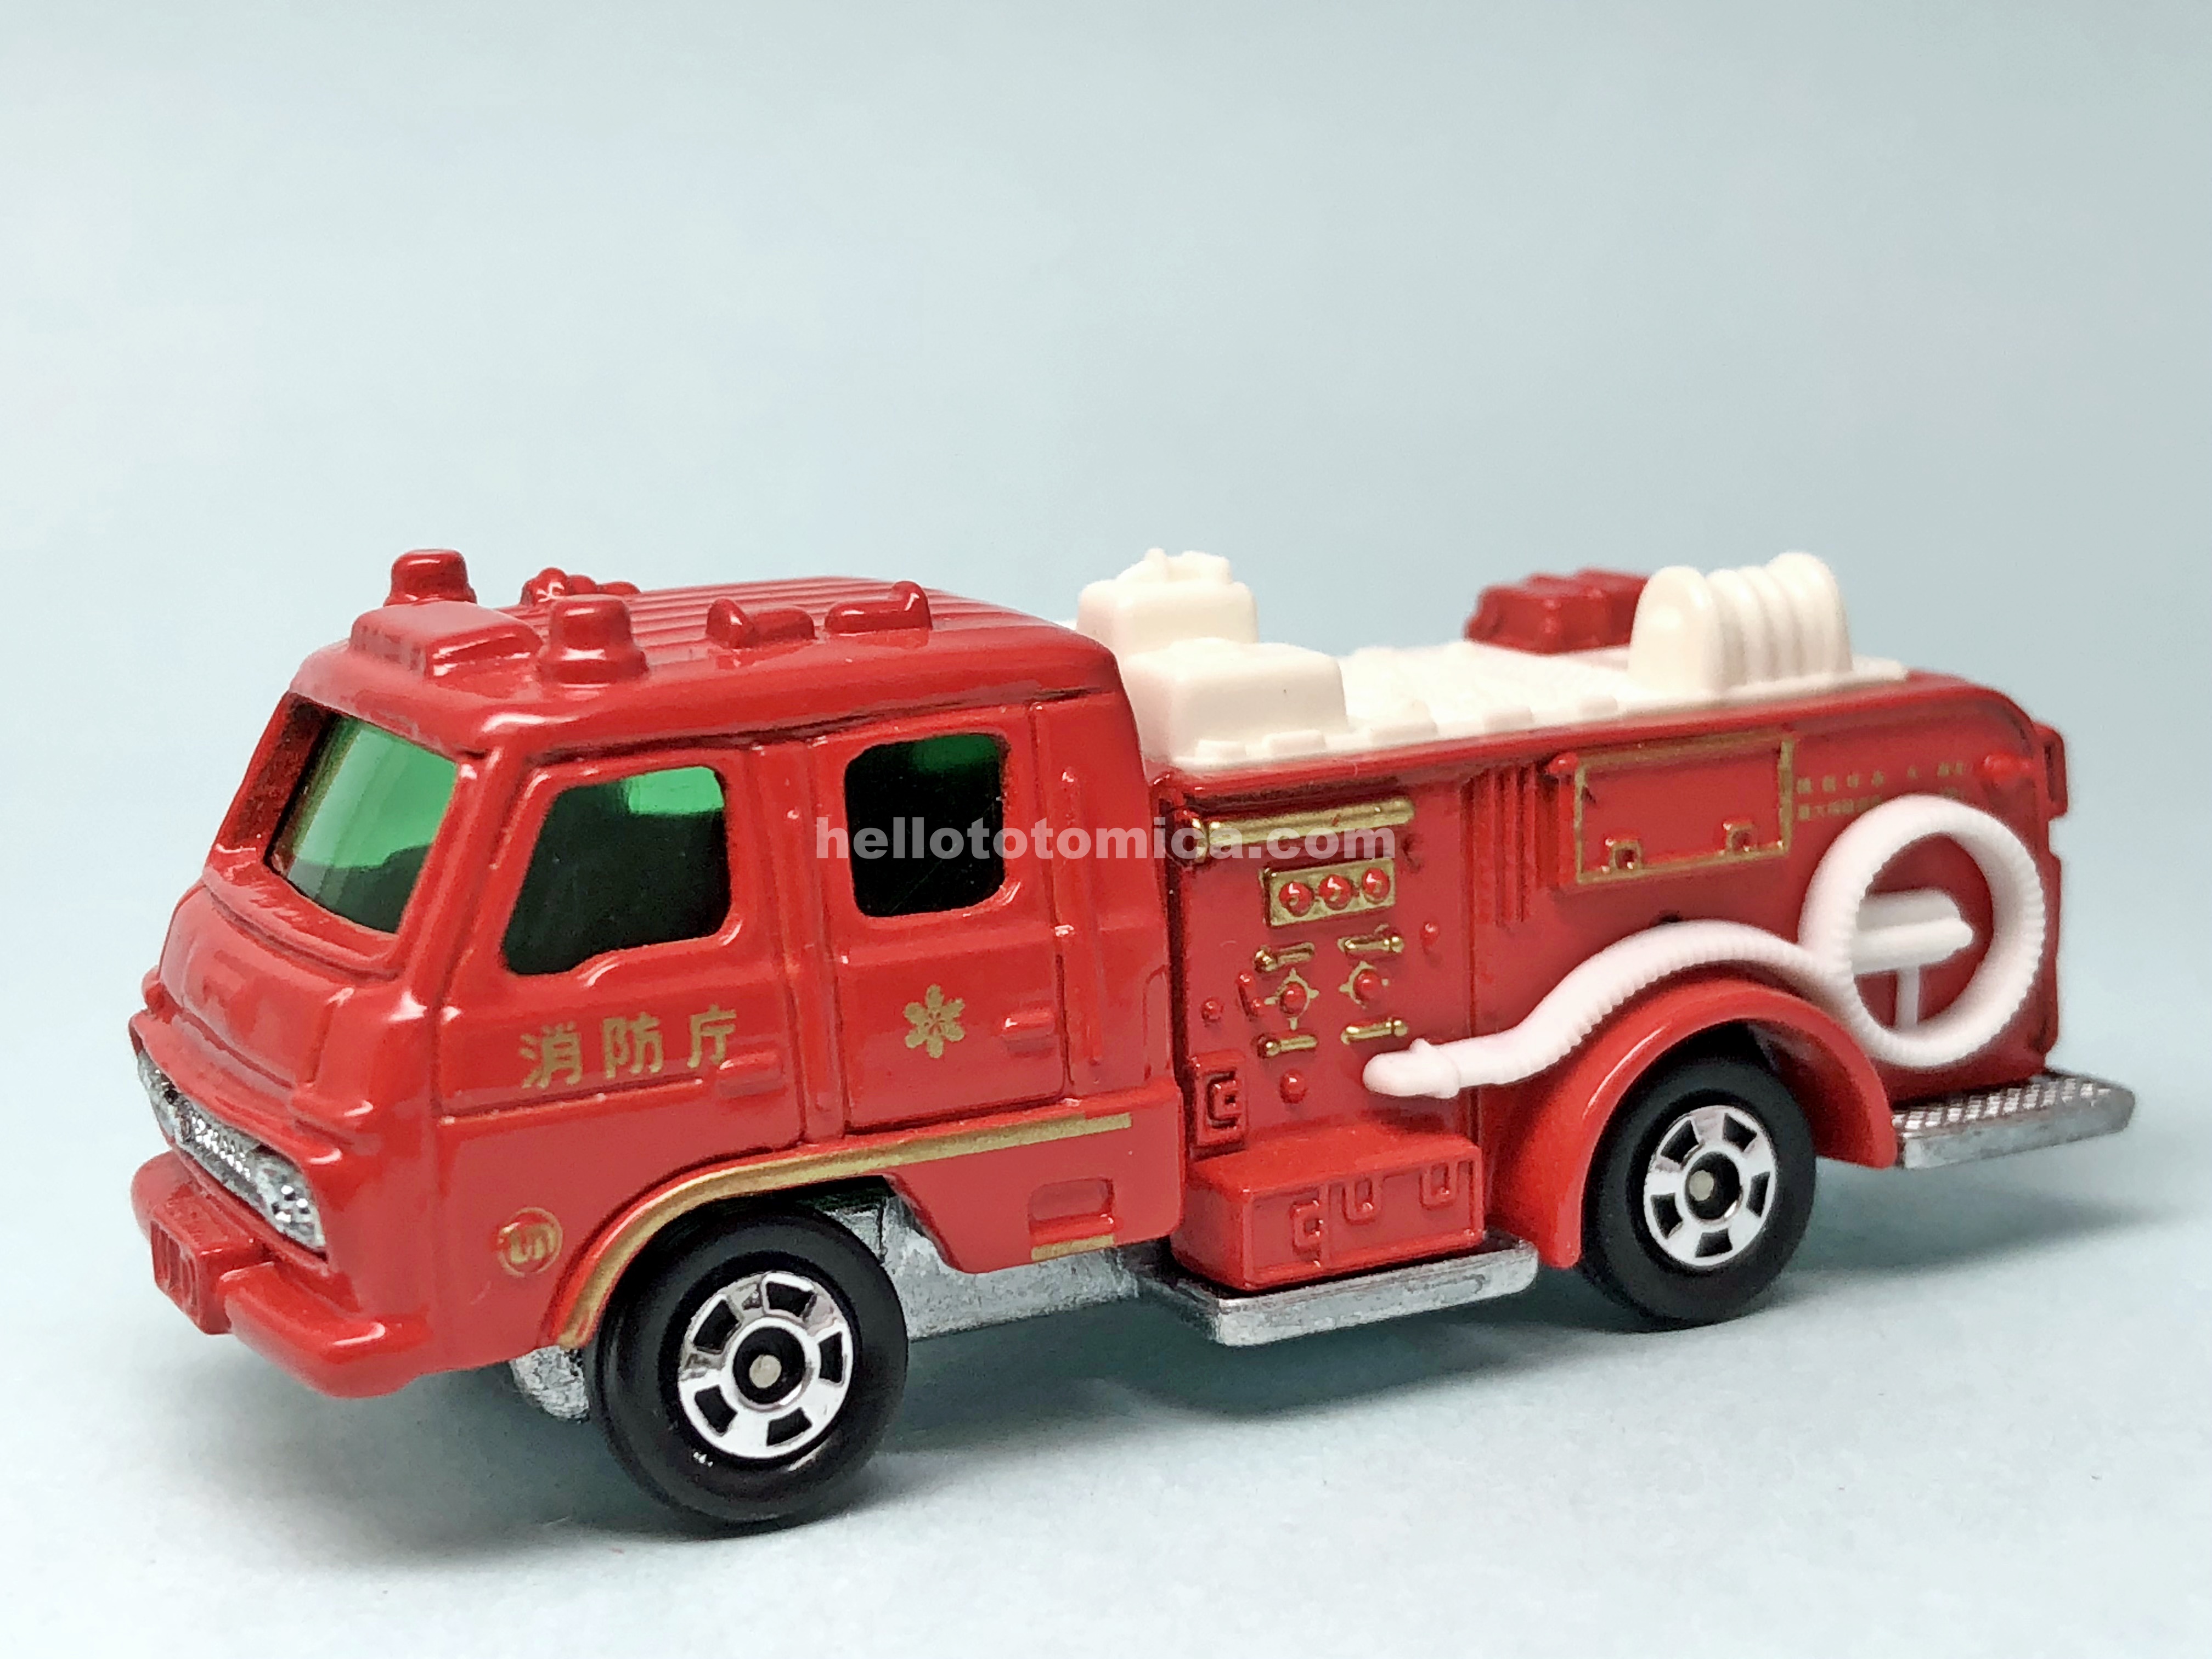 110-2 ニッサンディーゼル ポンプ消防車 | はるてんのトミカ